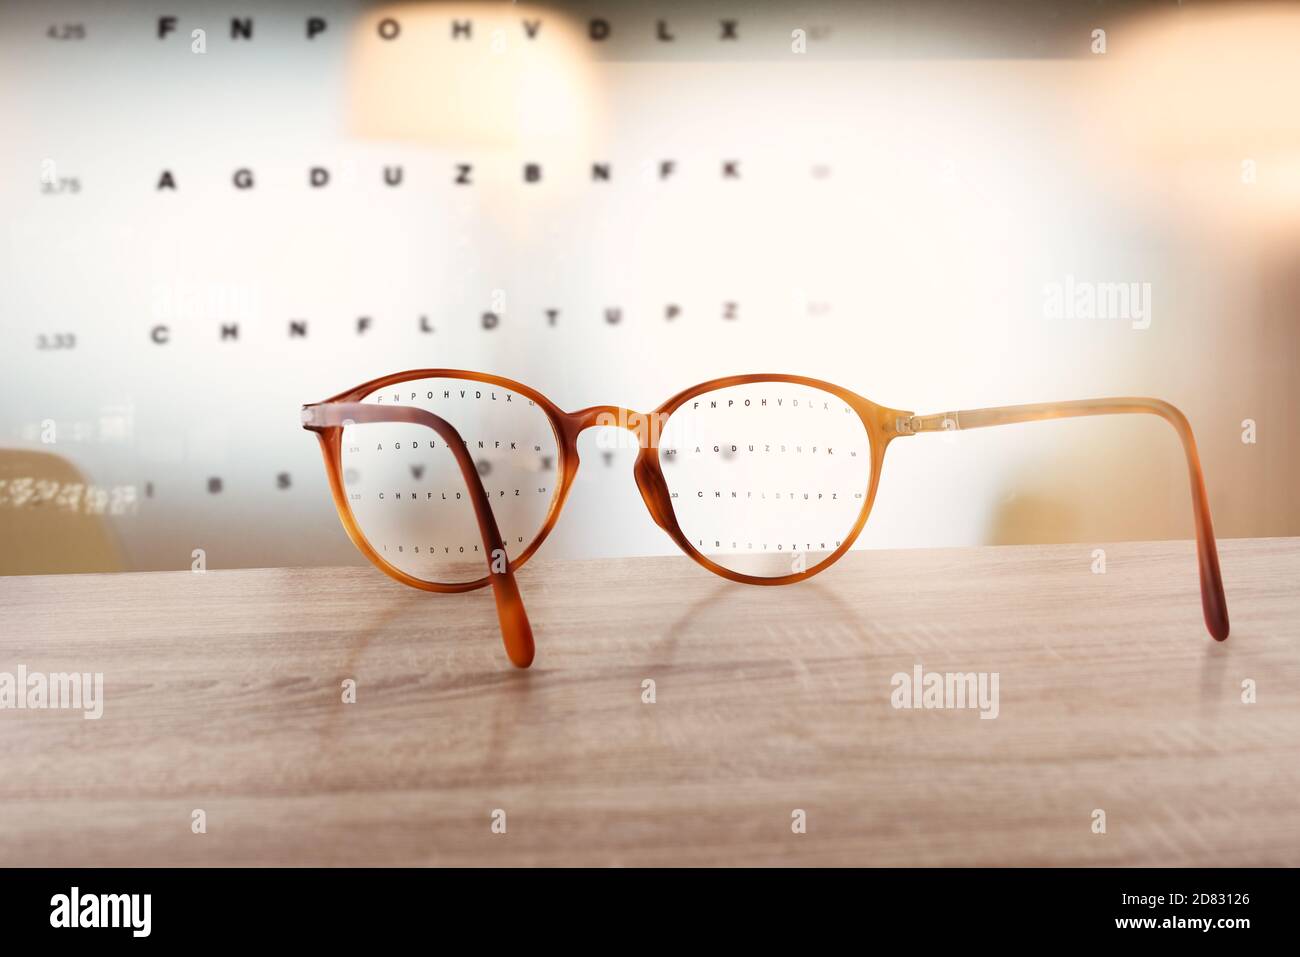 Gläser, die das Sehvermögen von unscharf bis scharf korrigieren. Stockfoto